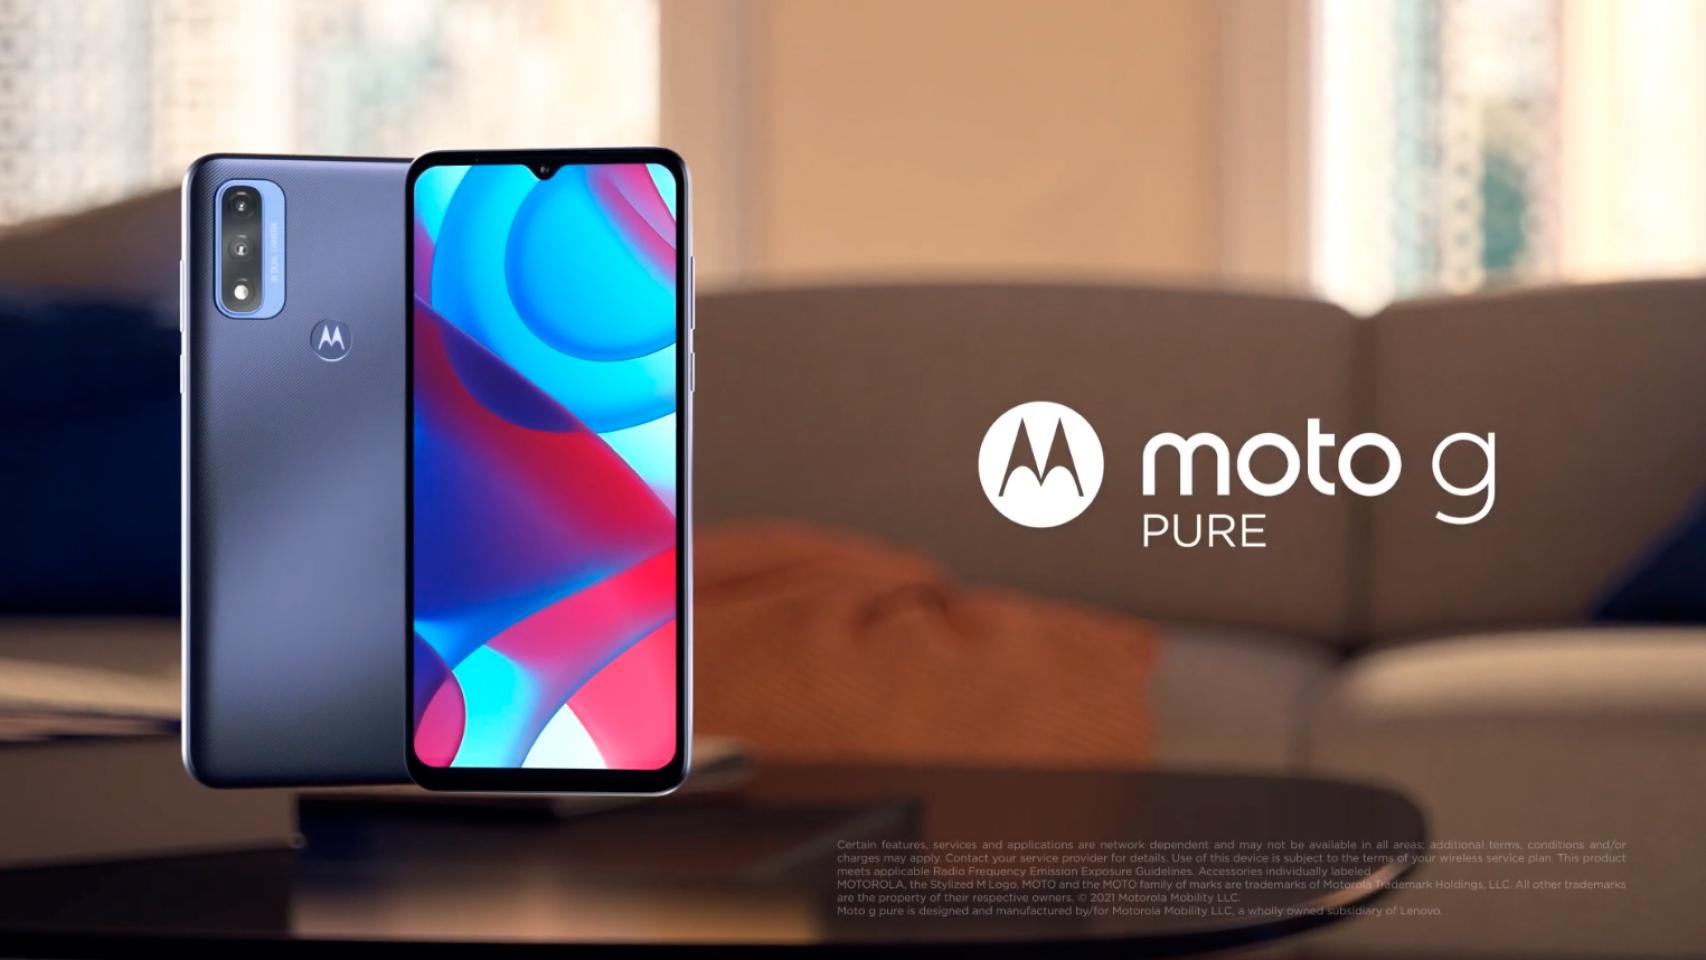 Nuevo Motorola Moto G Pure: características, precios...